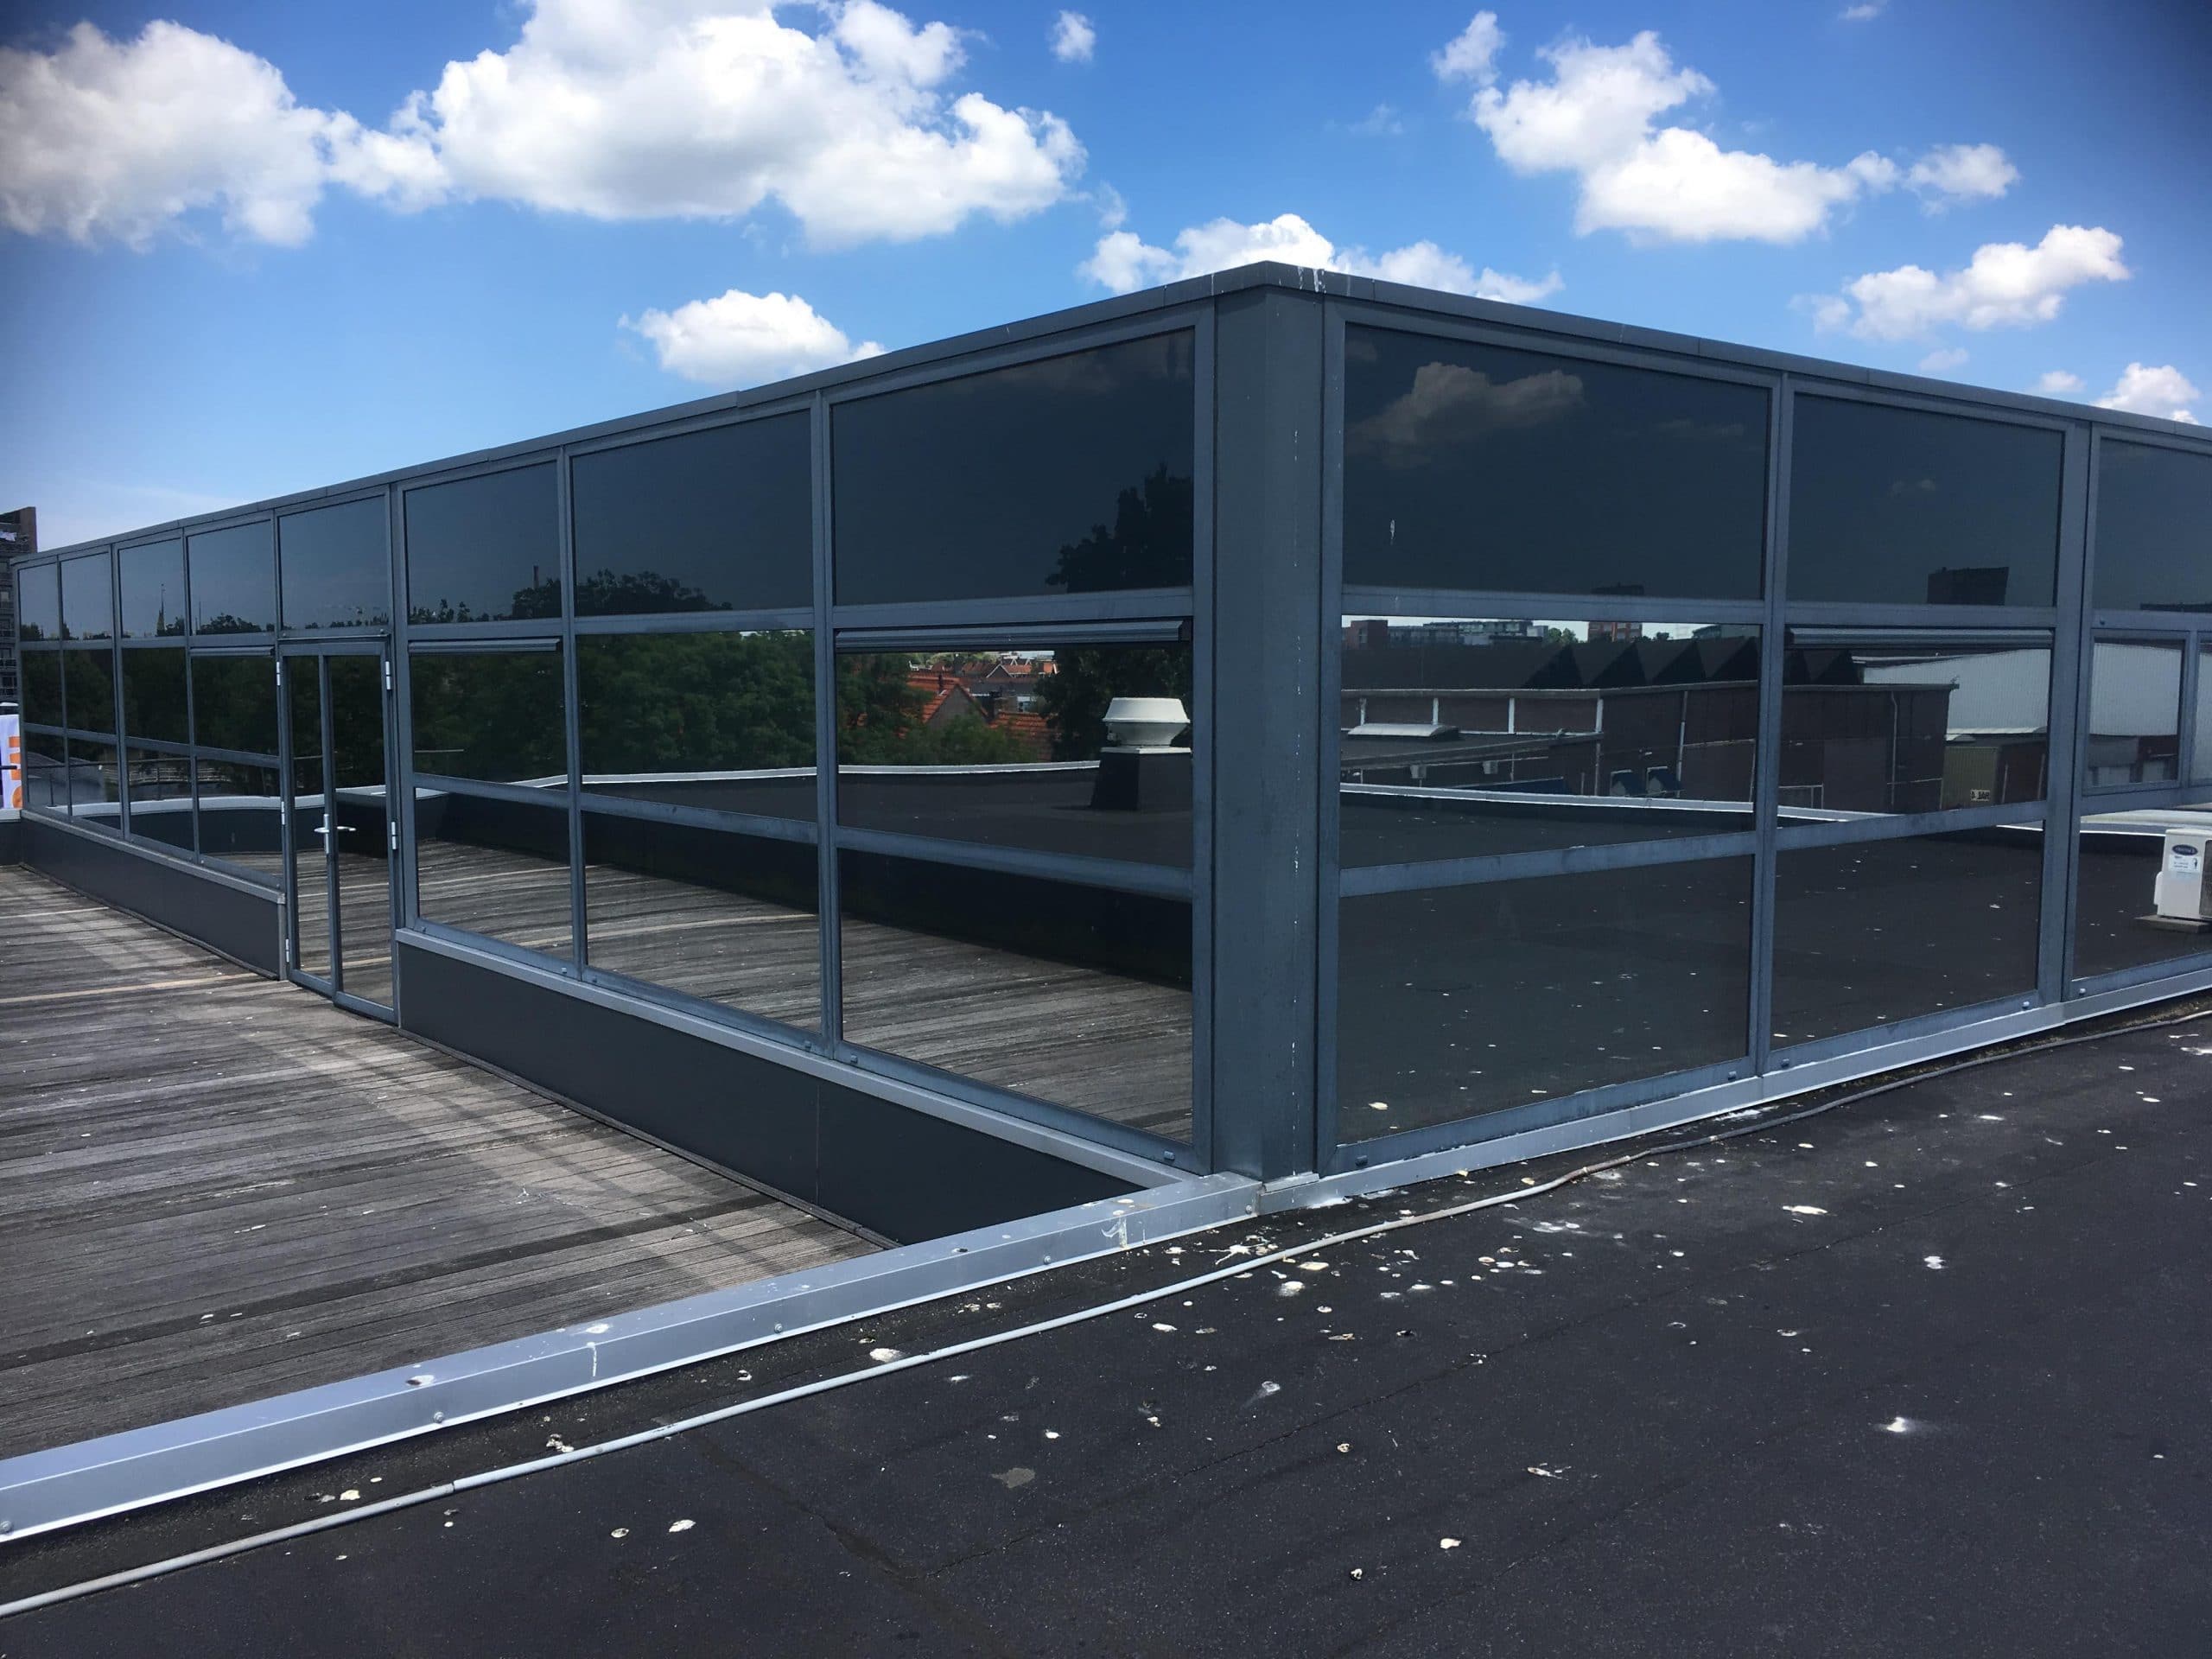 Leiderdorp - Montage van Sunblock Zilver 20 glasfolie op de buitenzijde van het glas van kantoren. Hierdoor wordt de zonnewarmte tot 86% gereduceerd !